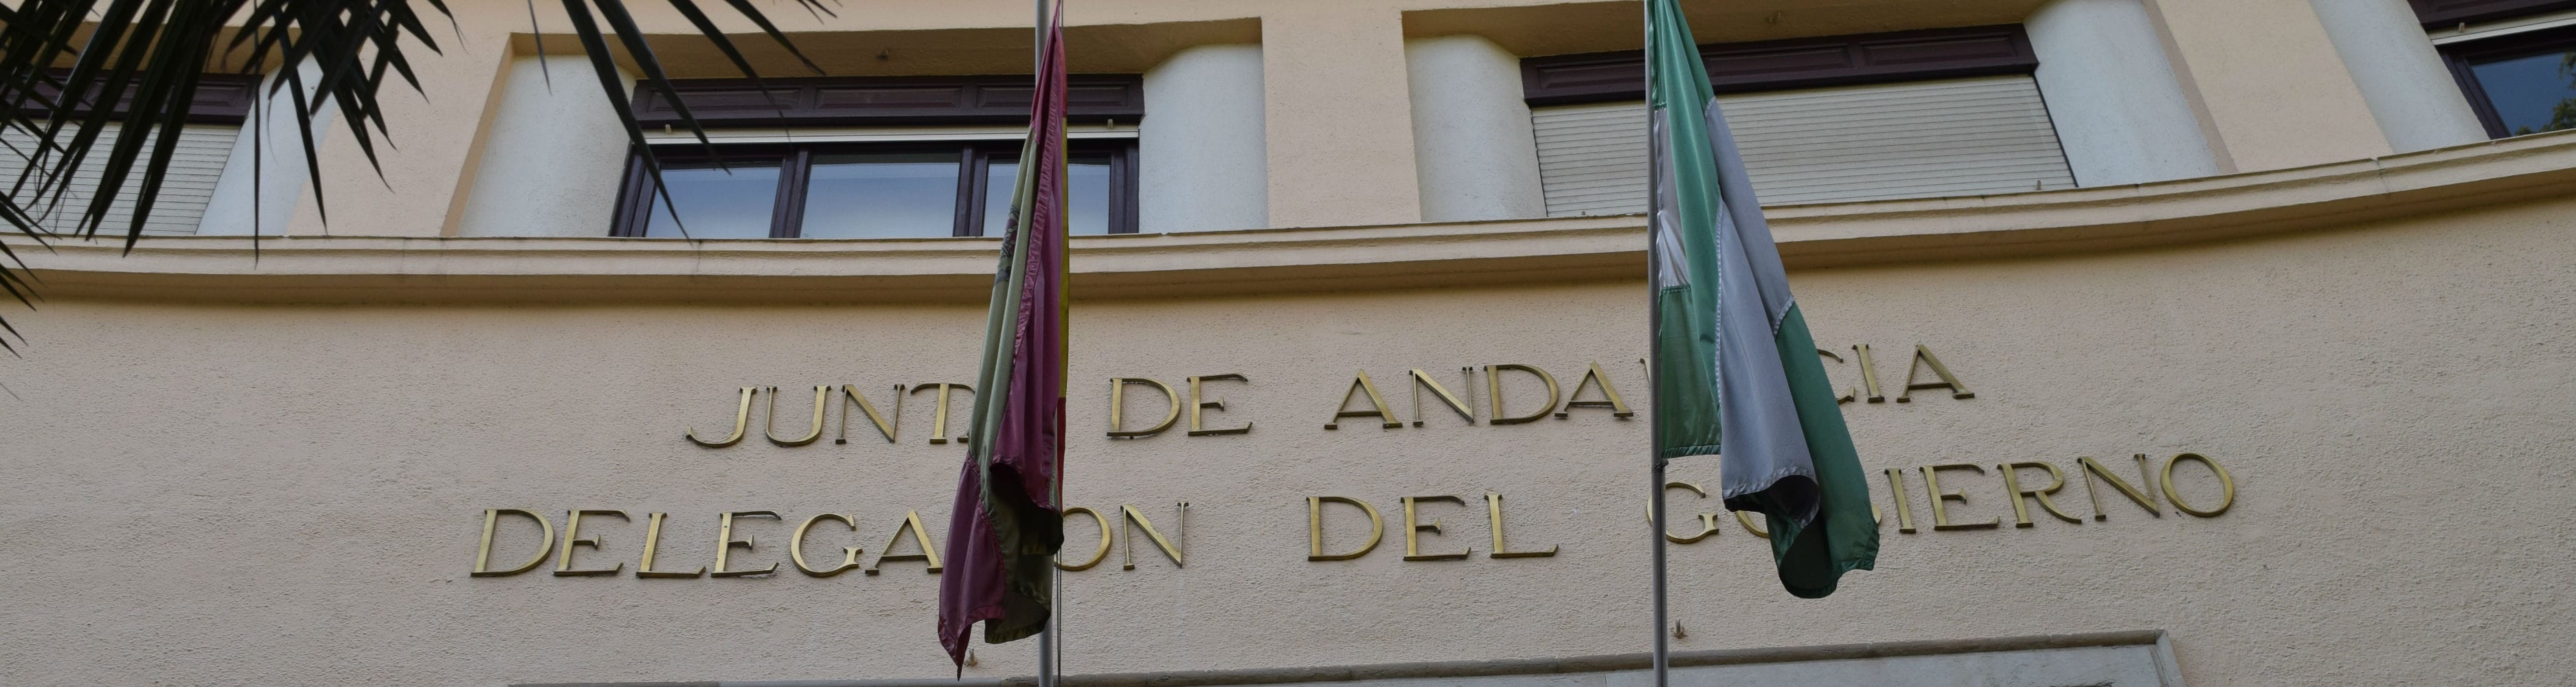 Sede de la Delegación de la Junta de Andalucía en Jaén